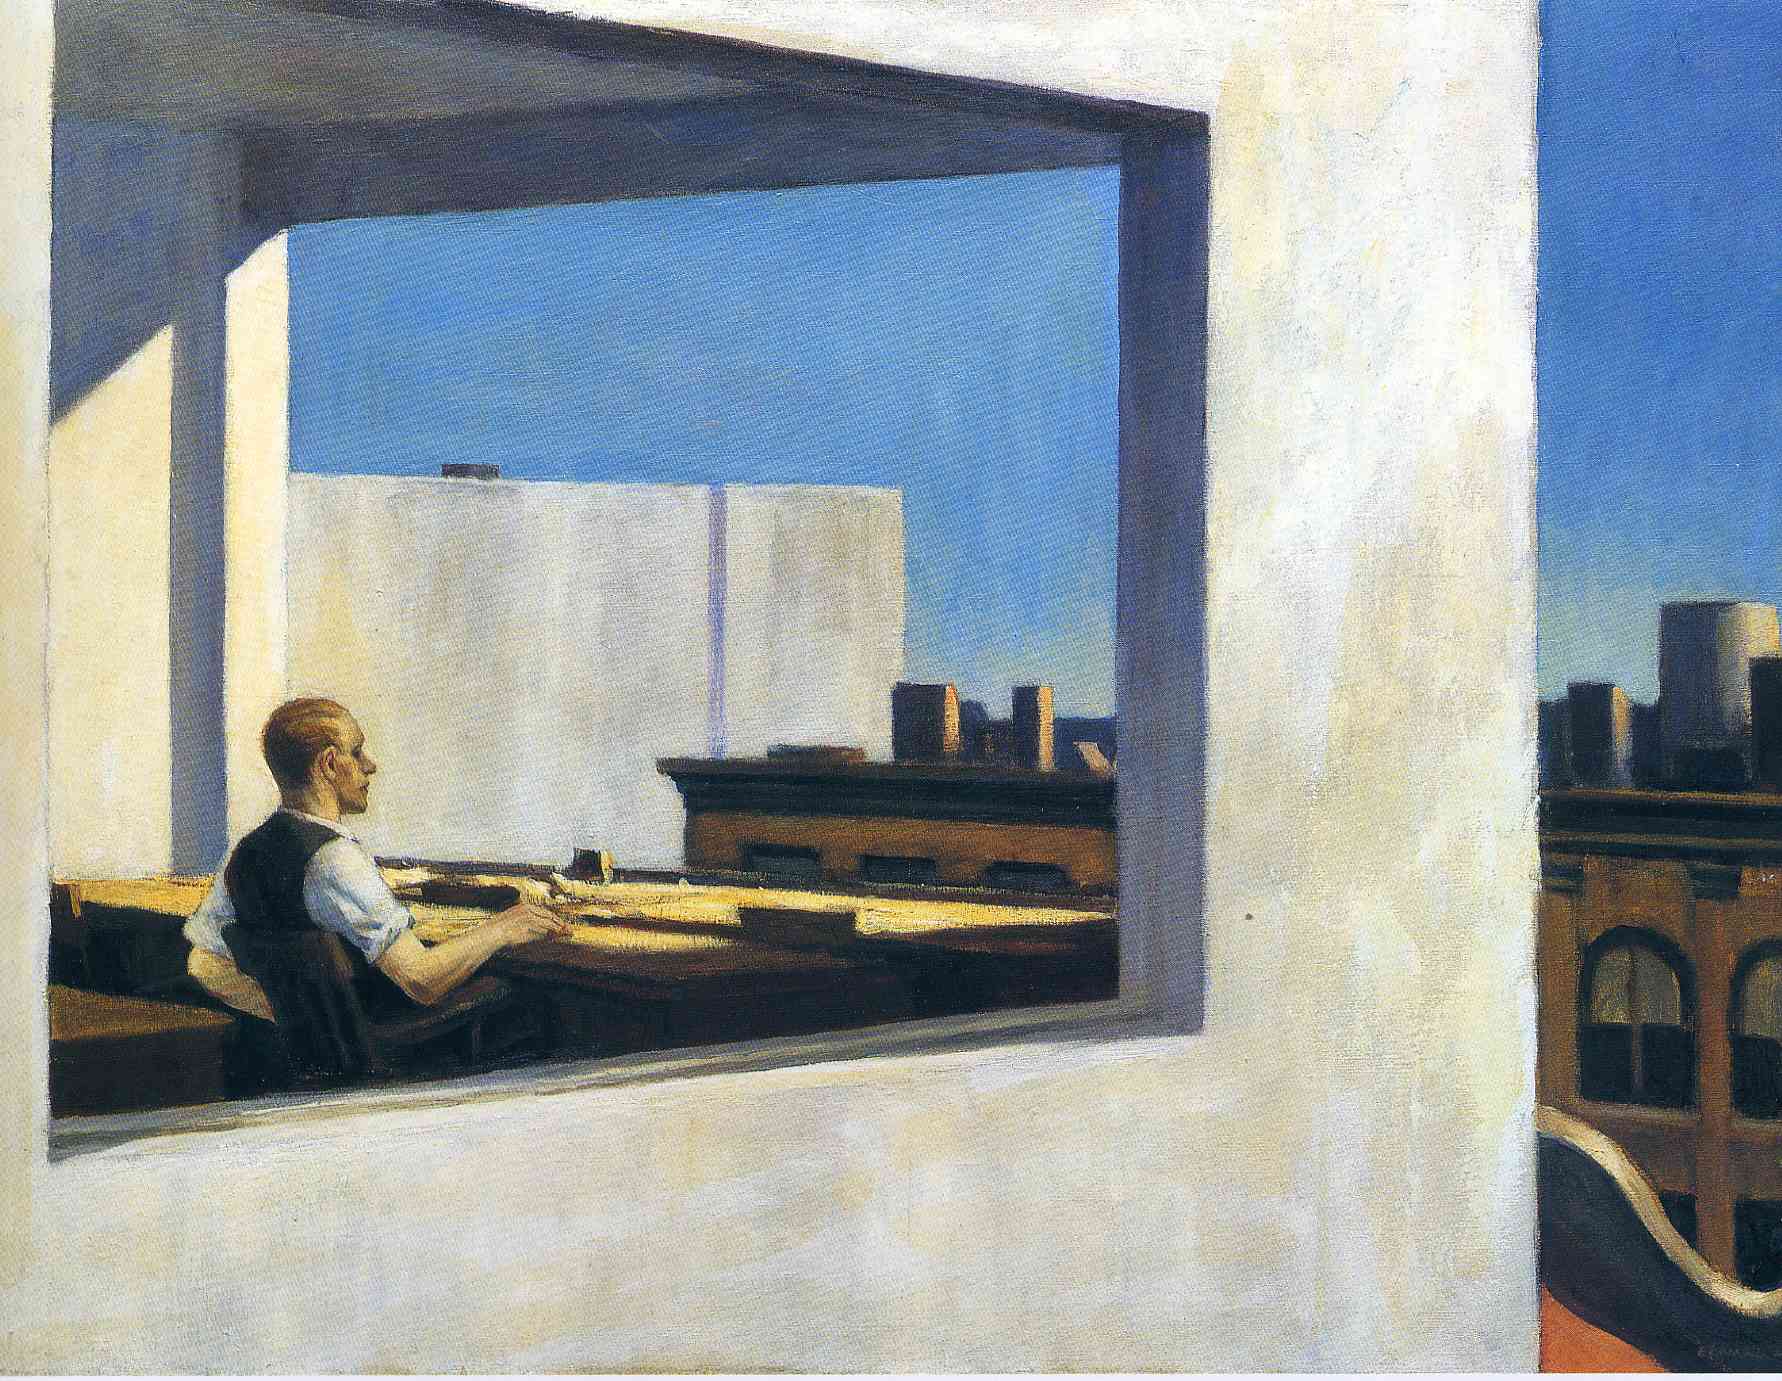 Bureau dans une Petite Ville by Edward Hopper - 1953 - 71.1 x 101.6 cm Metropolitan Museum of Art